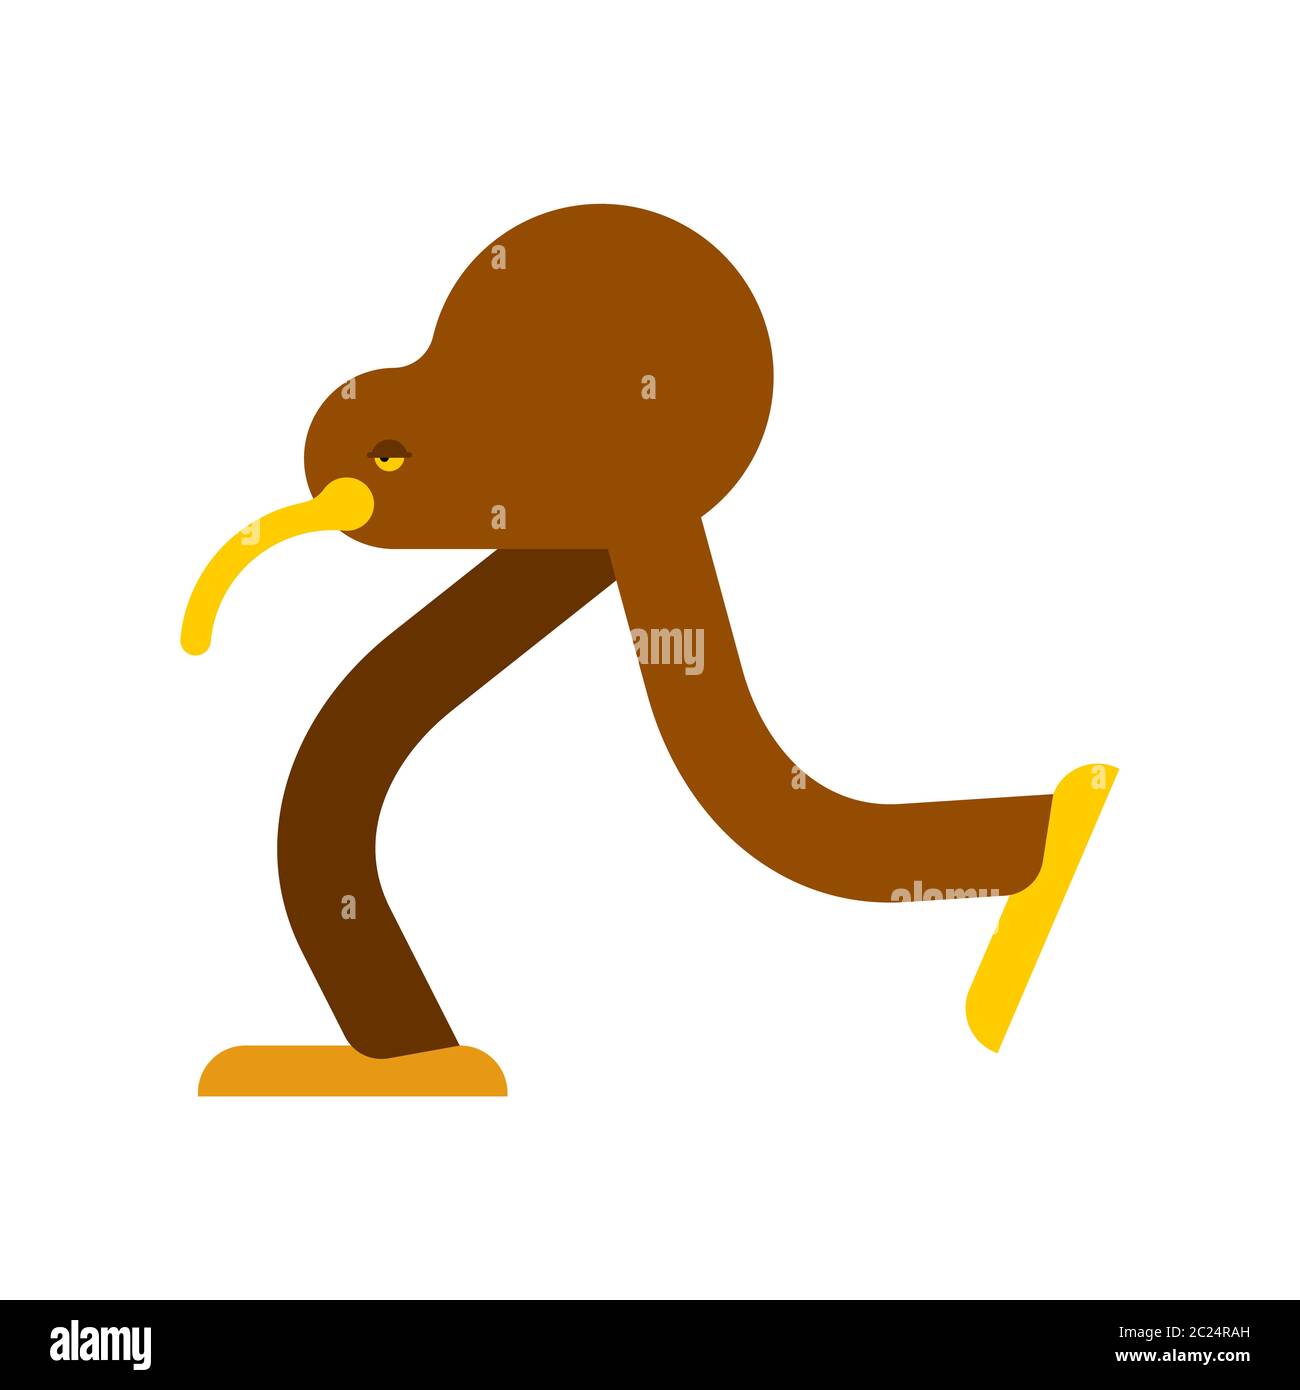 Kiwi bird cartoon isolated. little bird run vector illustration Stock Vector